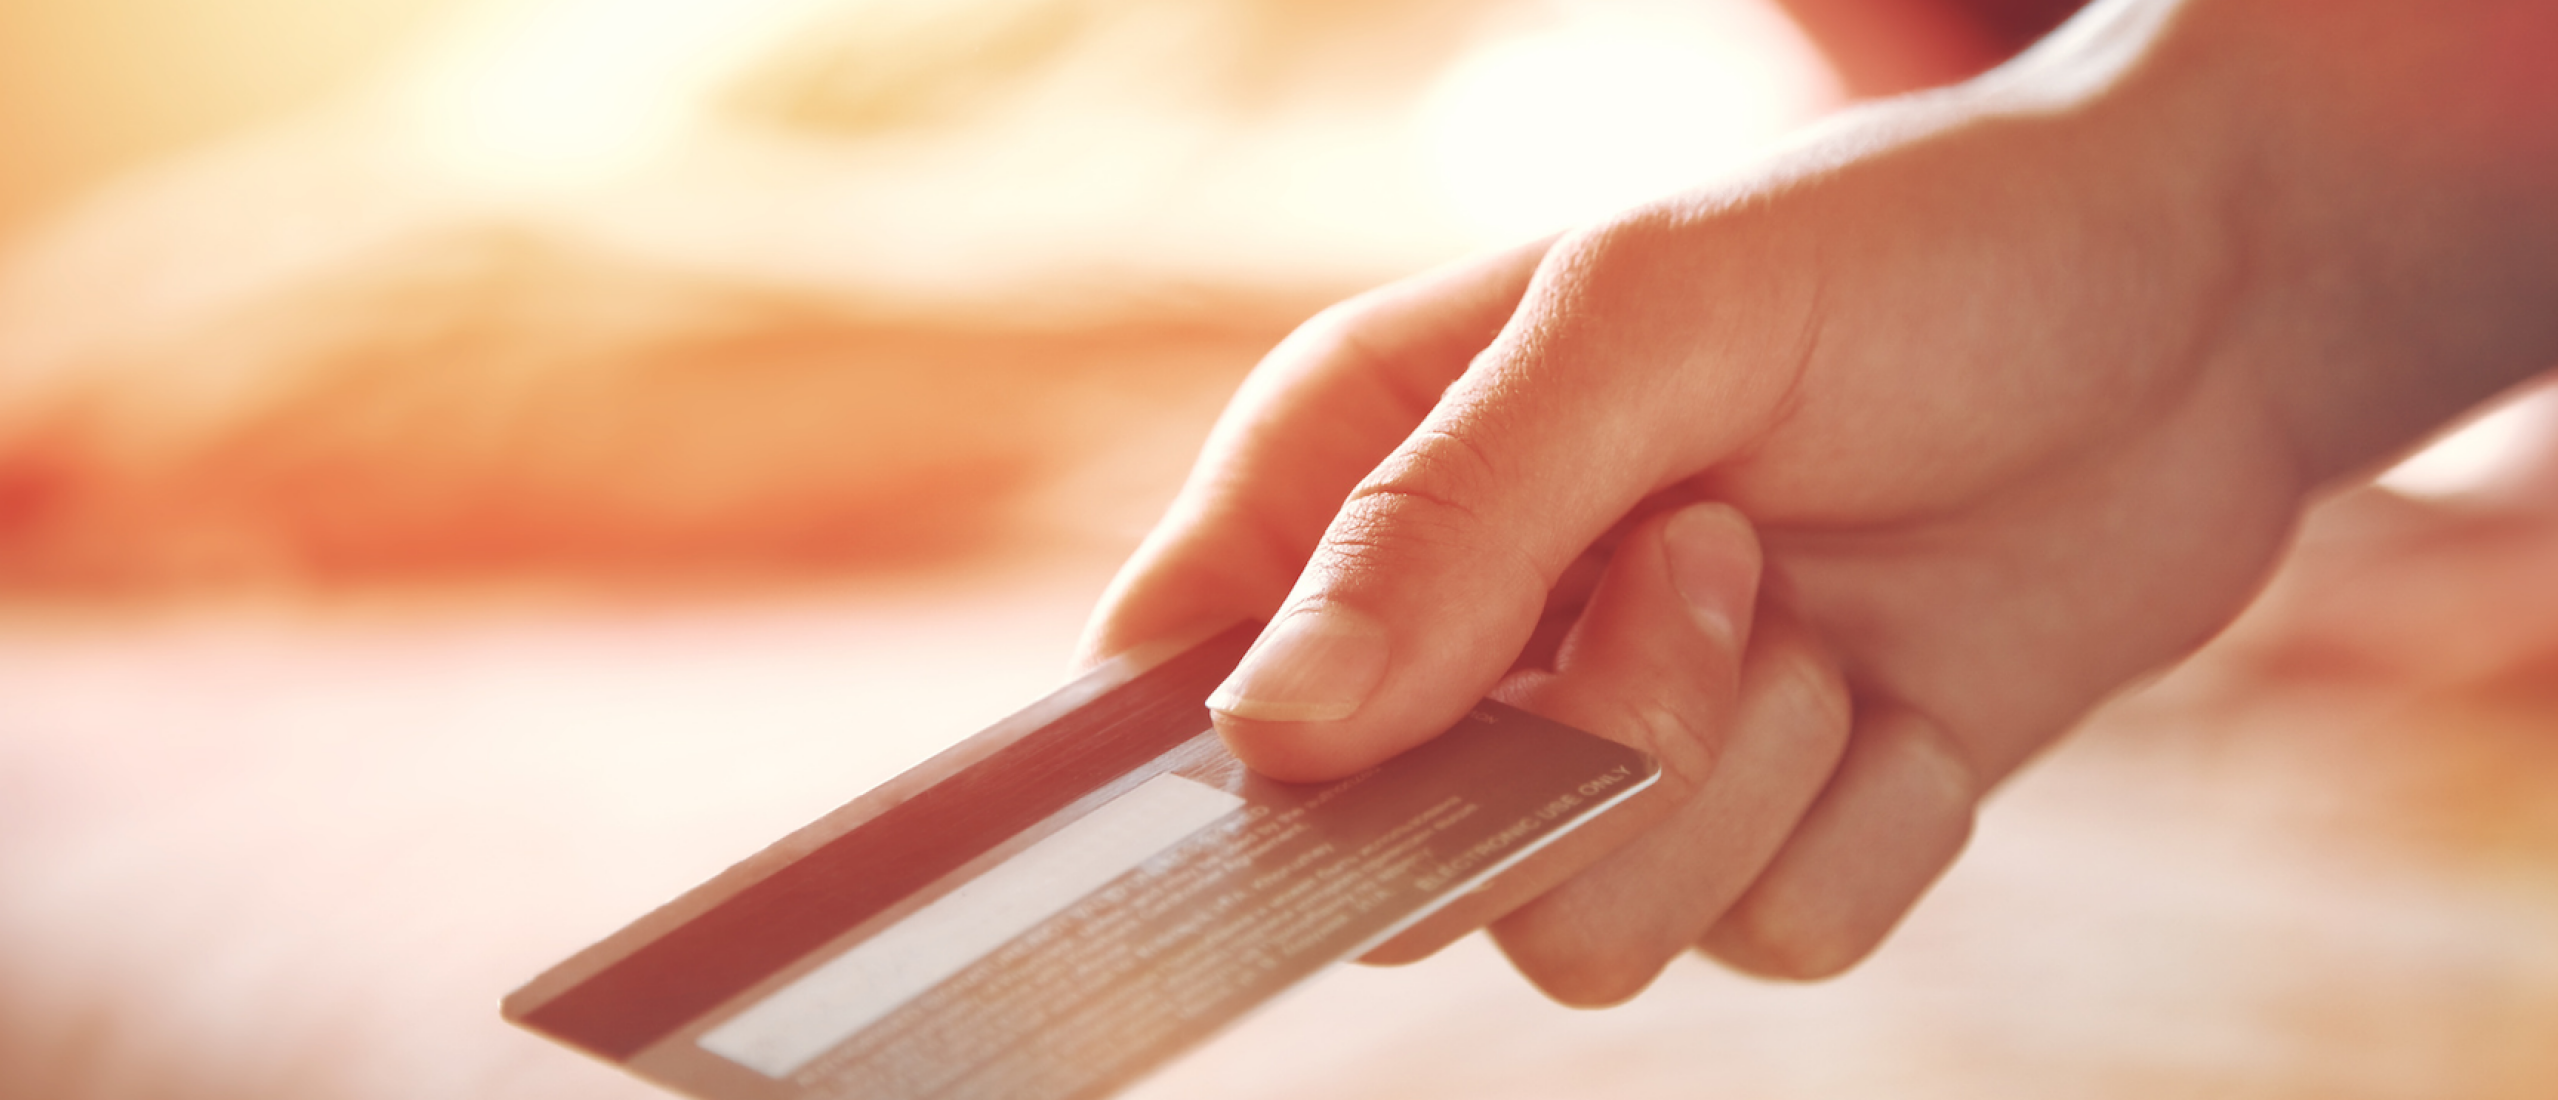 De debitcard is de snelst verkrijgbare betaalkaart